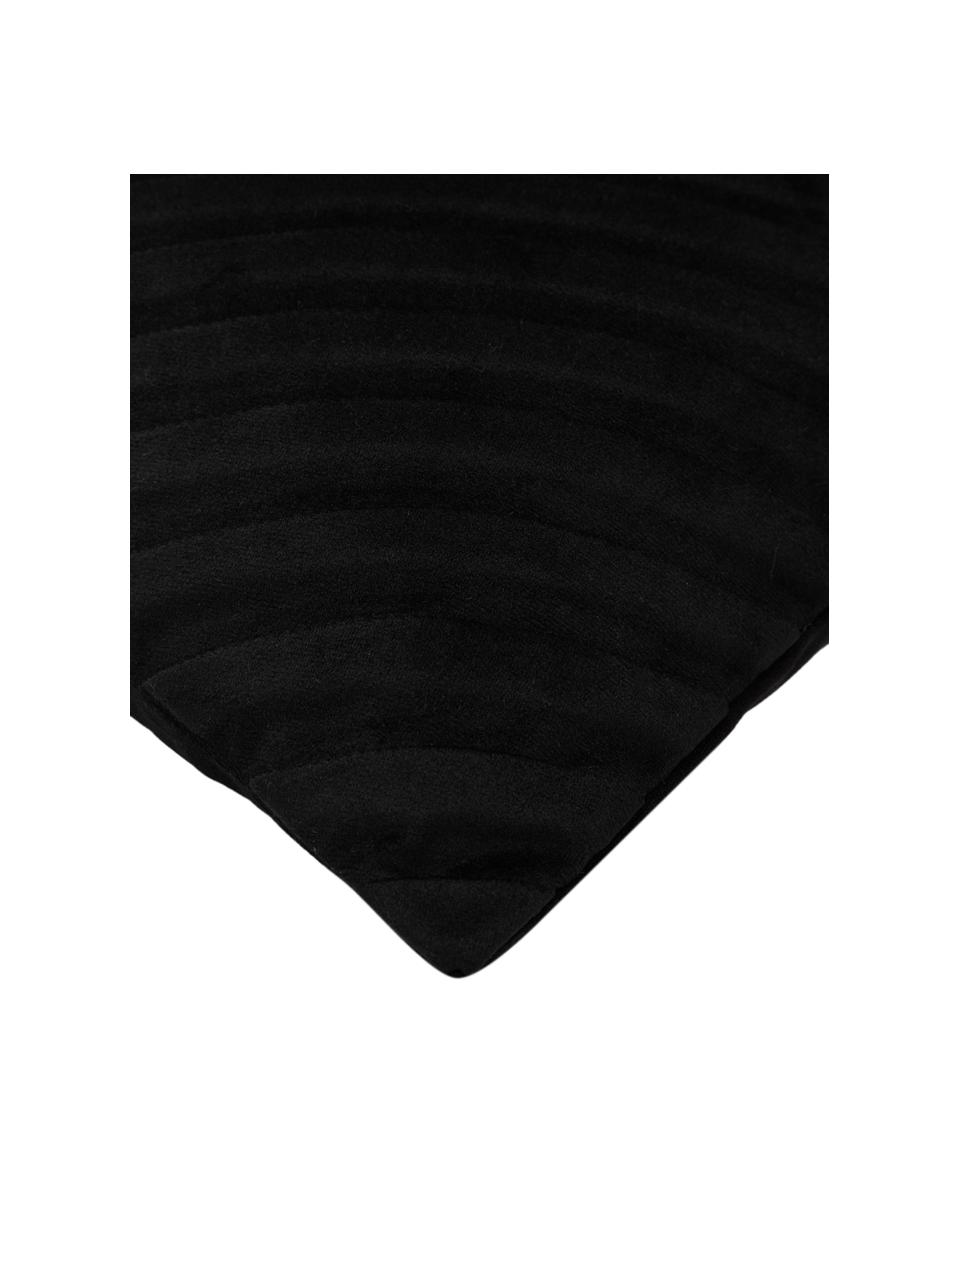 Samt-Kissenhülle Lucie in Schwarz mit Struktur-Oberfläche, 100% Samt (Polyester), Schwarz, B 45 x L 45 cm